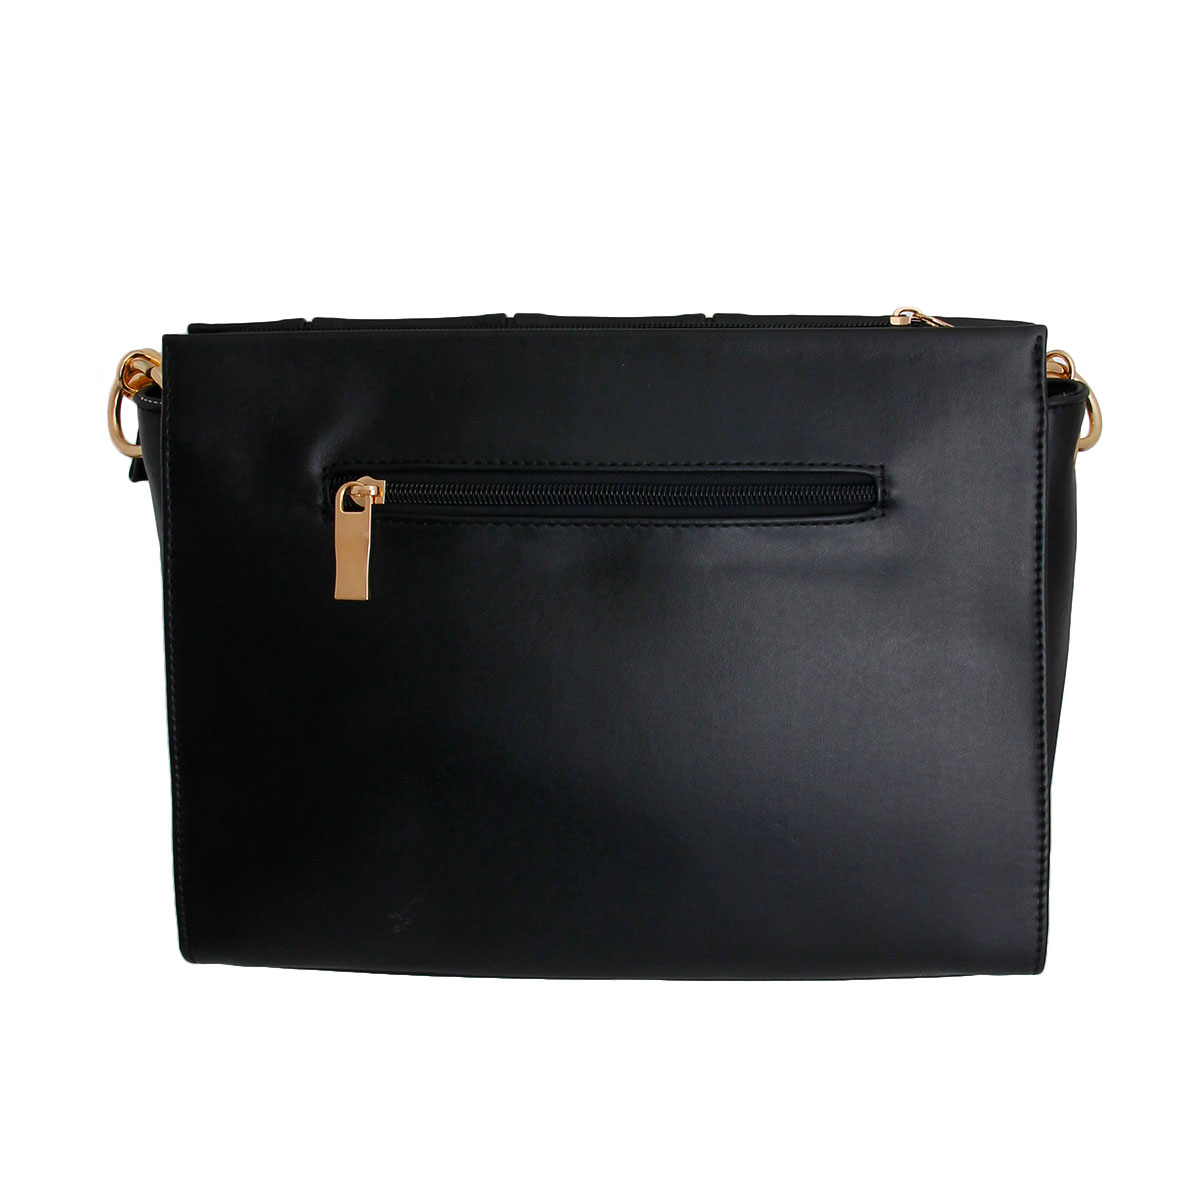 Black Pleated Tote Handbag